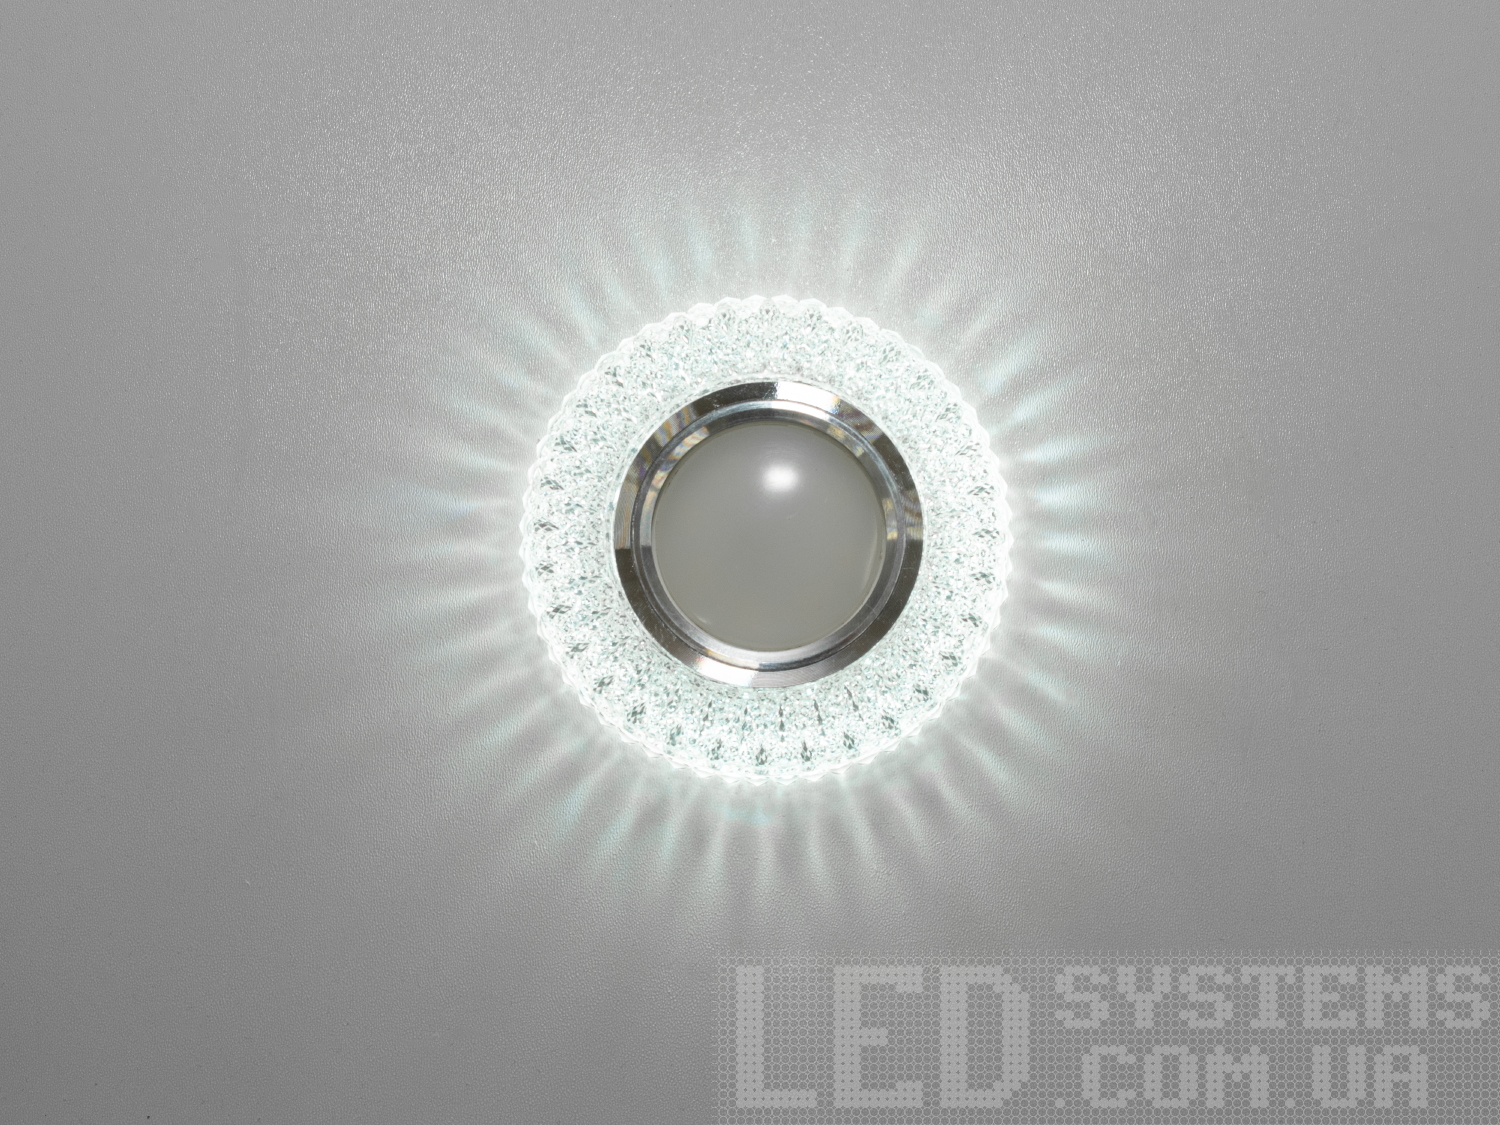 Точковий світильник з LED підсвічуванням є останнім криком моди від ТМ «Діаша», перетворюючи звичайне освітлення на чарівне дійство світла та тіней. Цей світильник не просто освітлює простір, він дарує йому життя і динаміку, завдяки своєму унікальному дизайну та м'якому світловому відблиску.
Витончені акрилові 